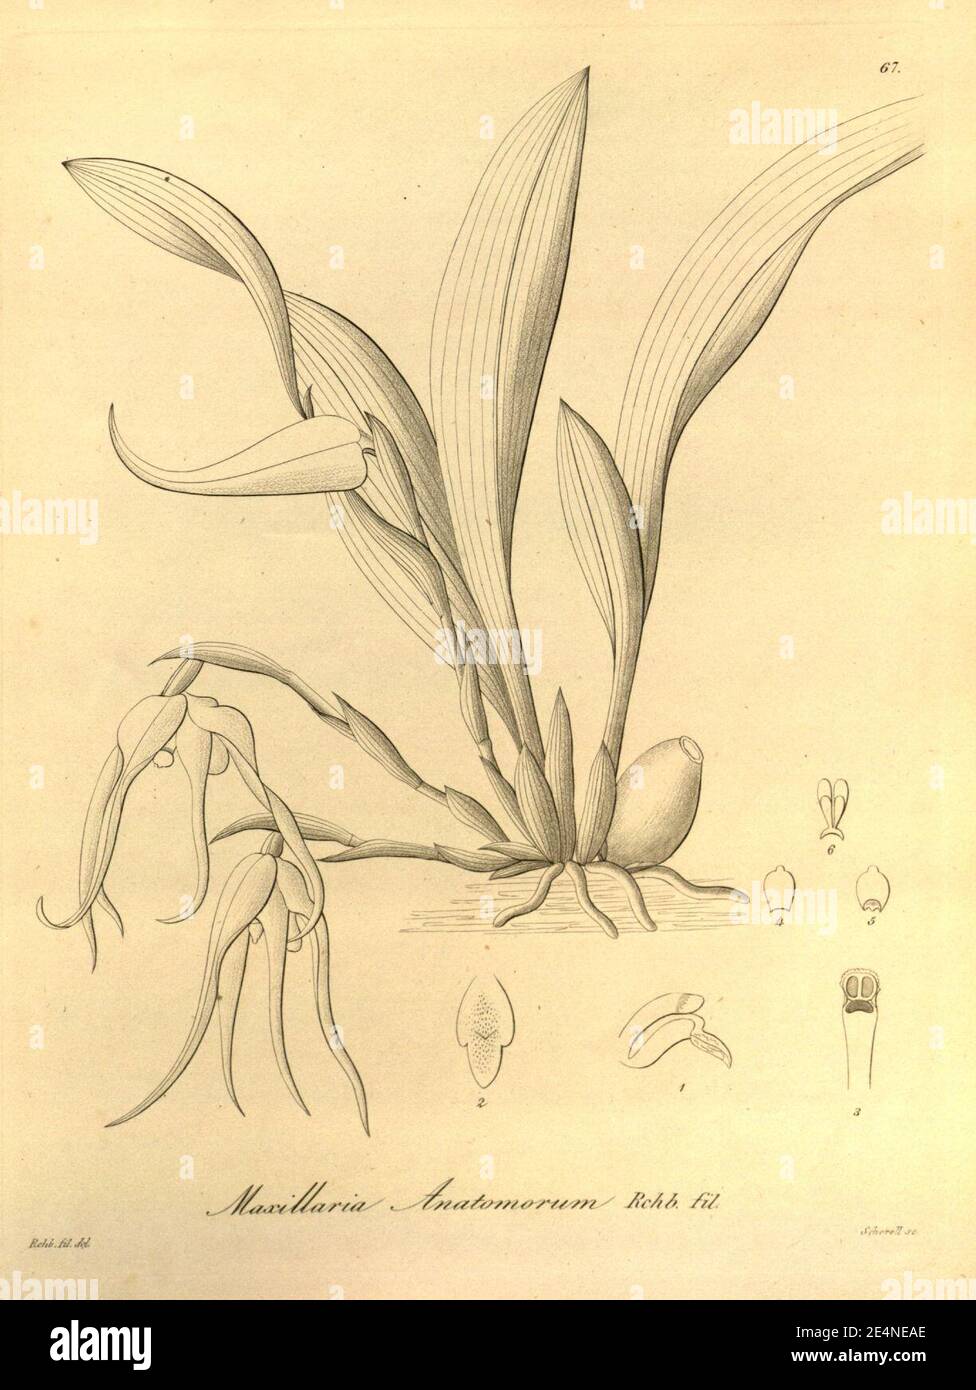 Maxillaria anatomorum - Xenia vol 1 pl 67 (1858). Stock Photo